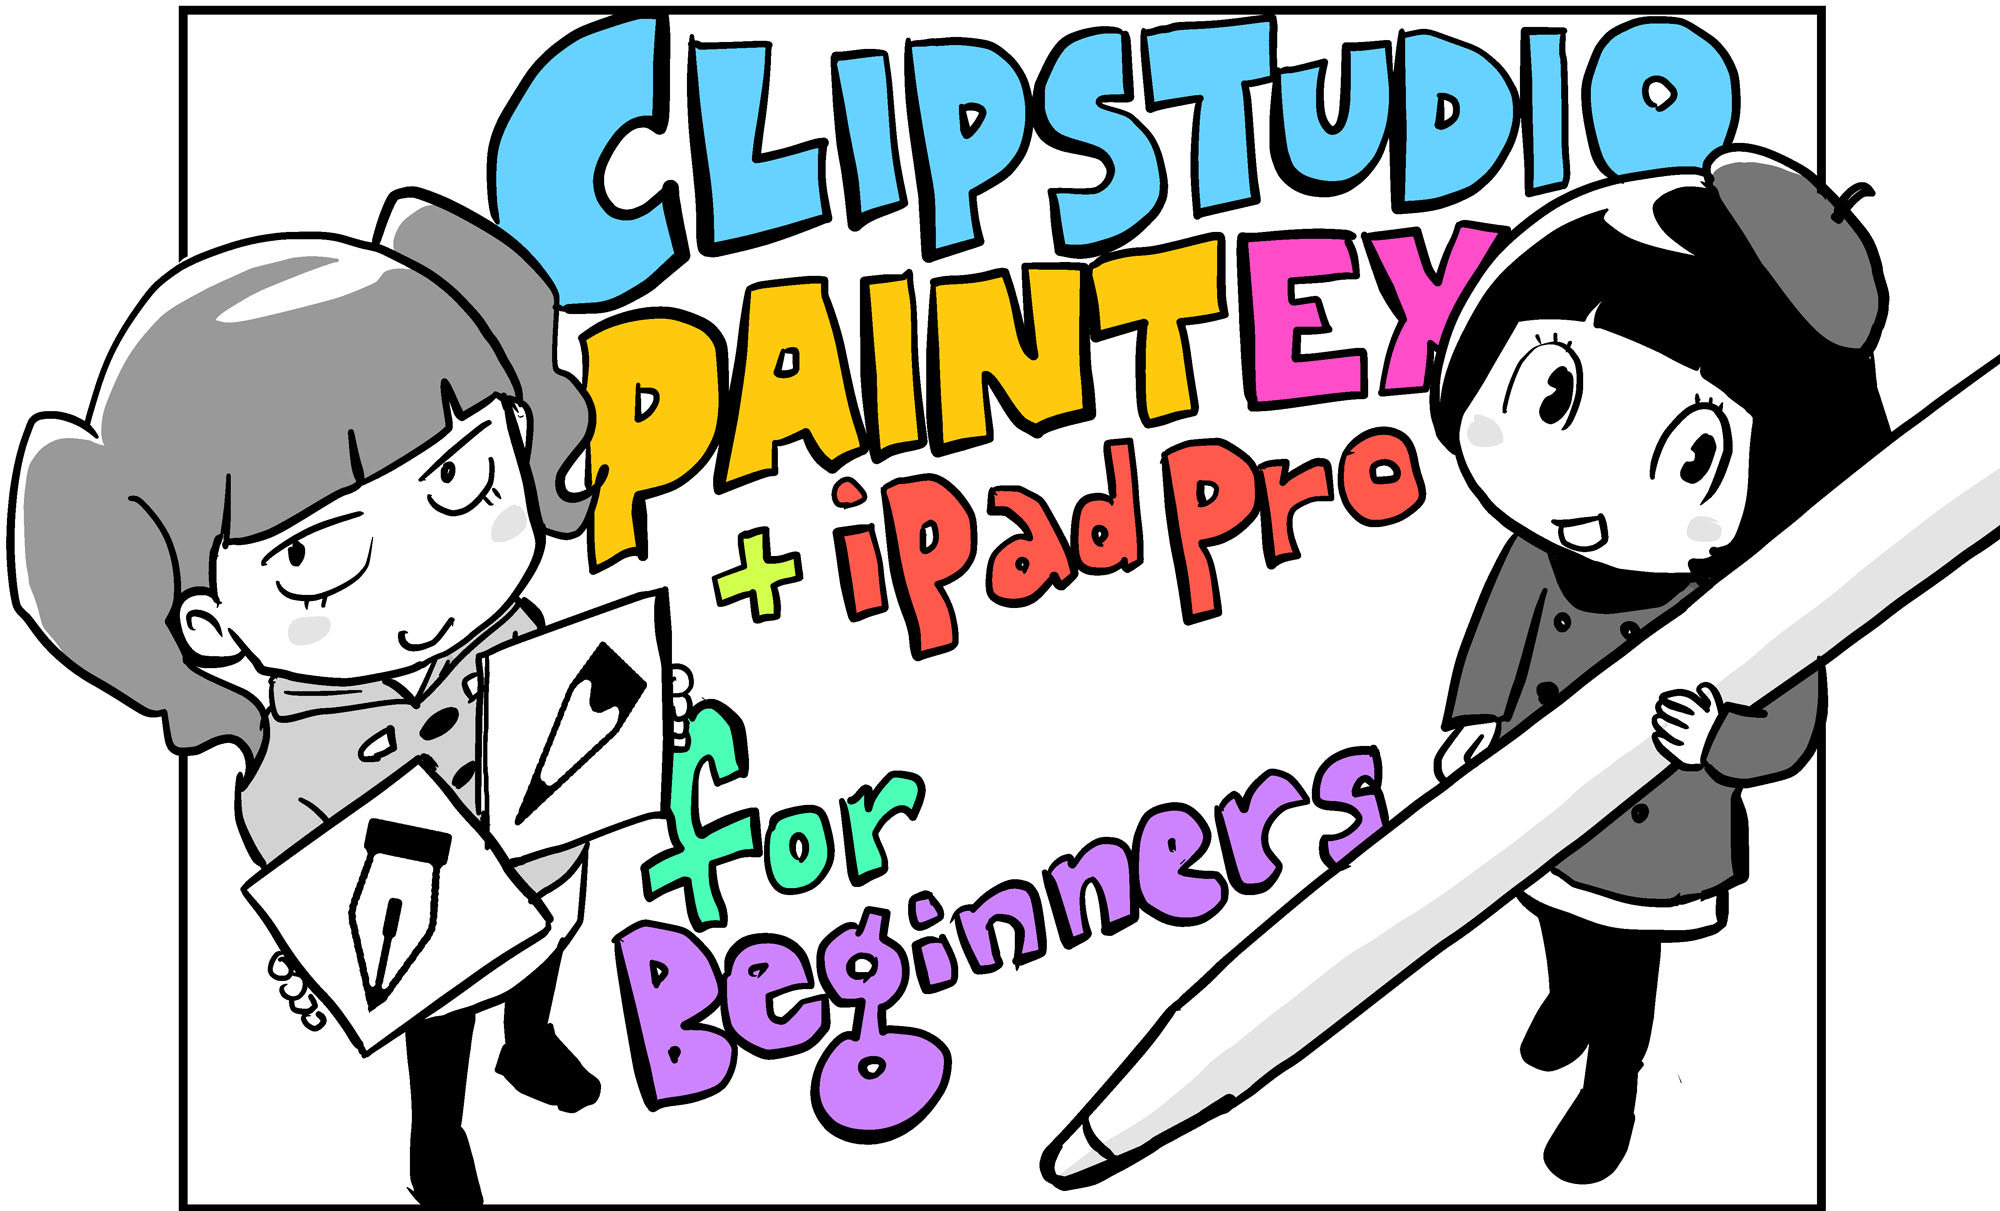 青木俊直さんの新連載 Ipadでクリスタ キャンバスと筆記具 を準備しよう 青木俊直 Clip Studio Paint Ex Ipad Pro For Beginners 第1回 Pictures